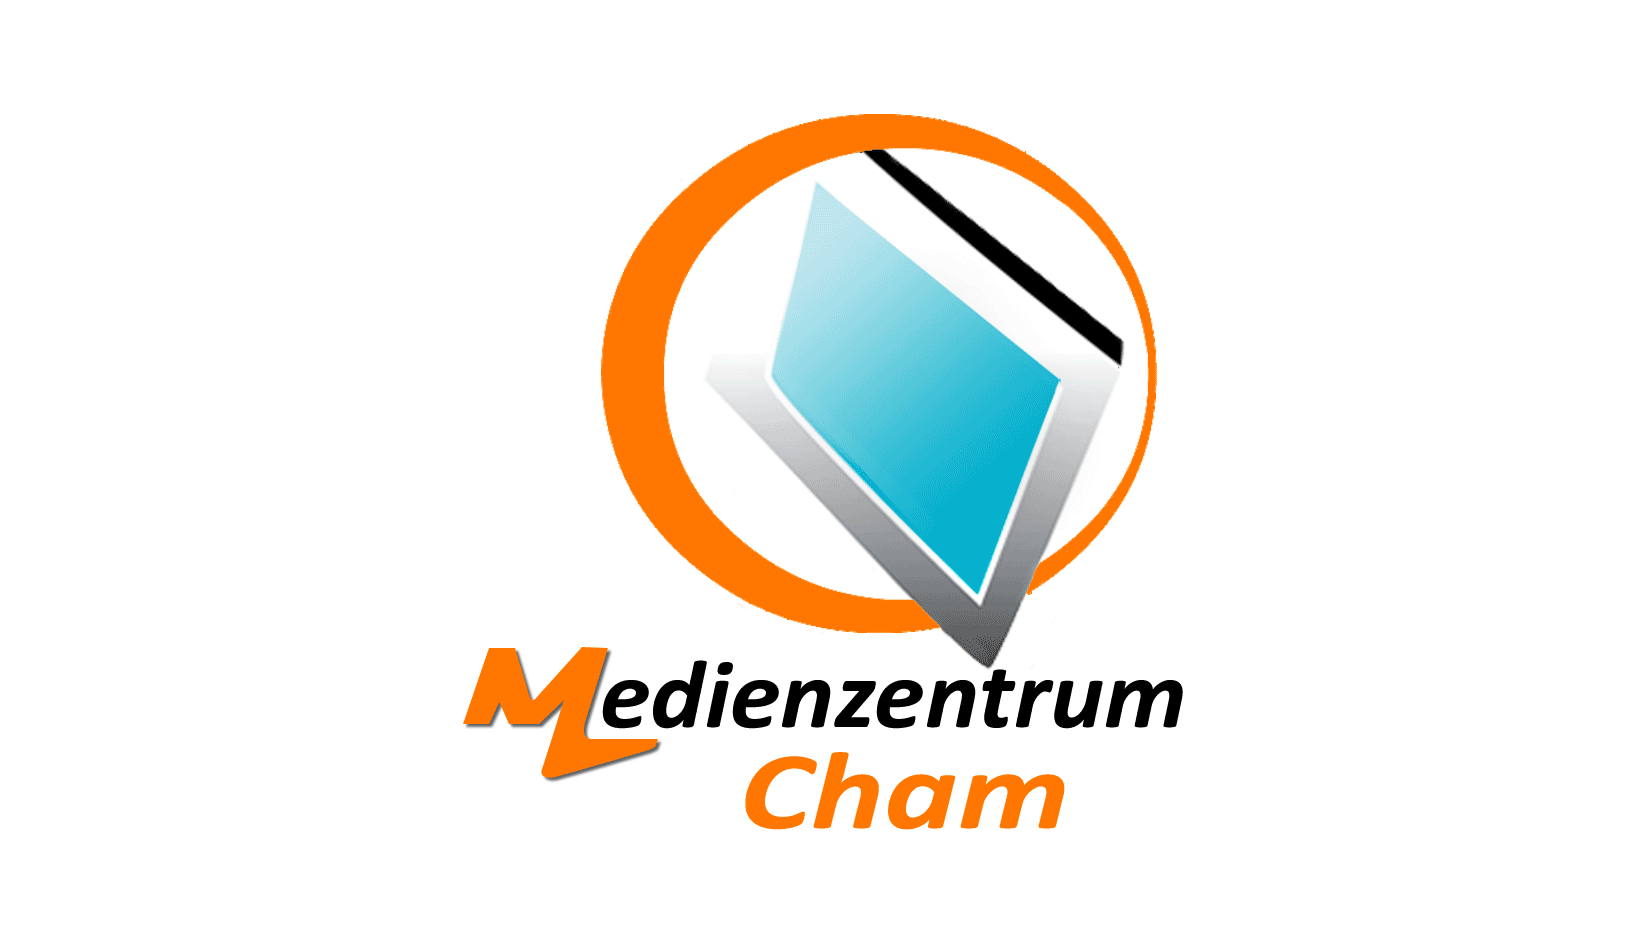 Zur externen Seite Medienzentrum Cham unter www.medienzentrum-cham.de